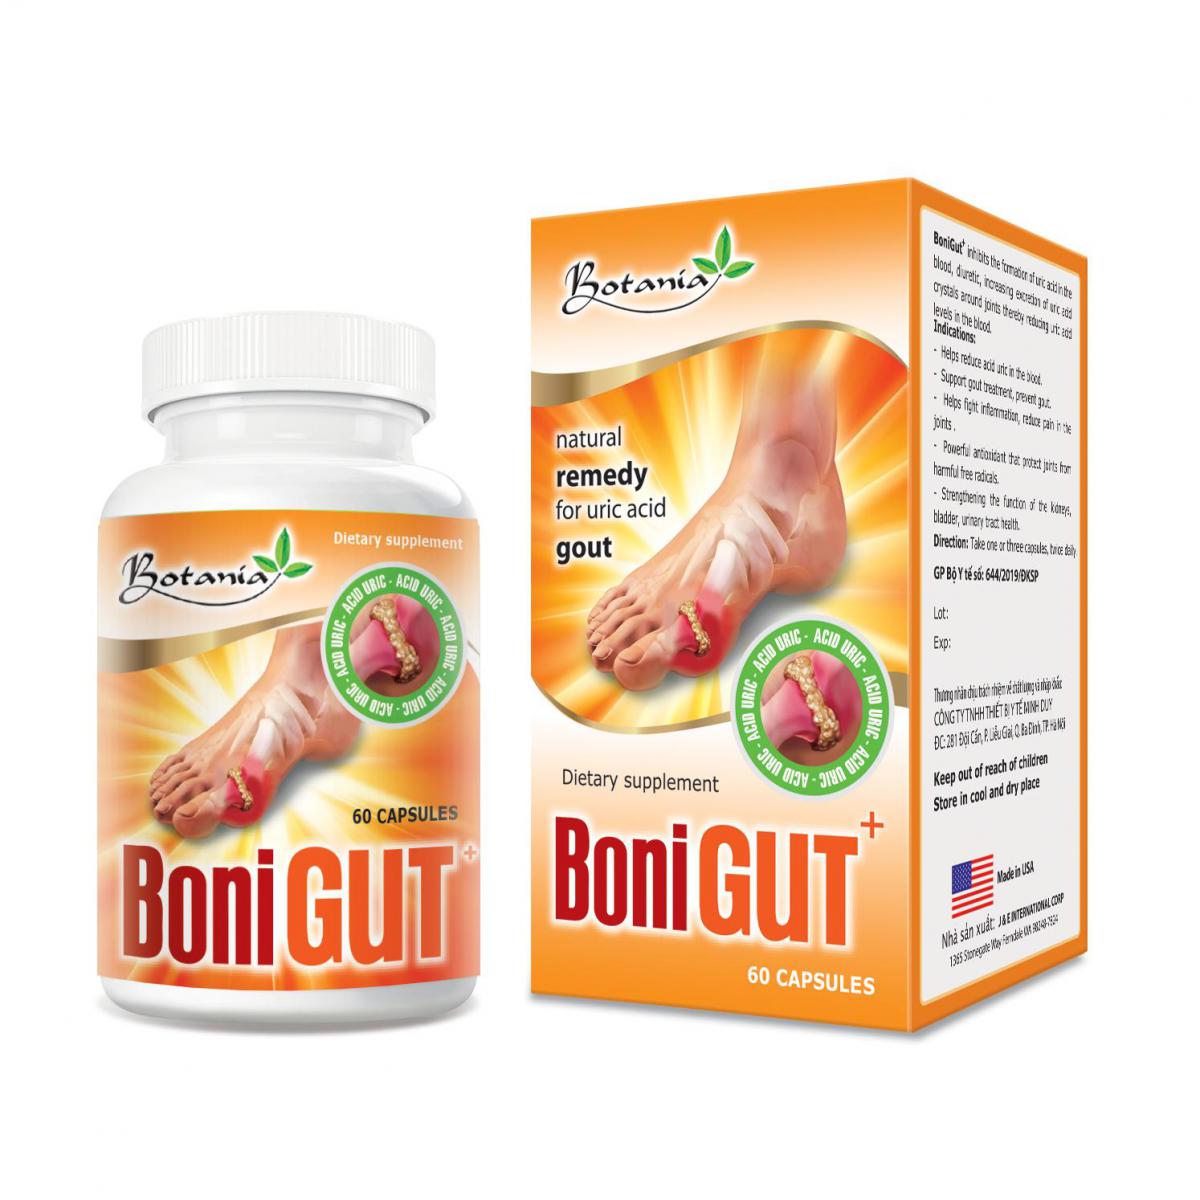 BoniGut + - Sản phẩm vàng giúp ngăn ngừa sự hình thành cục tophi